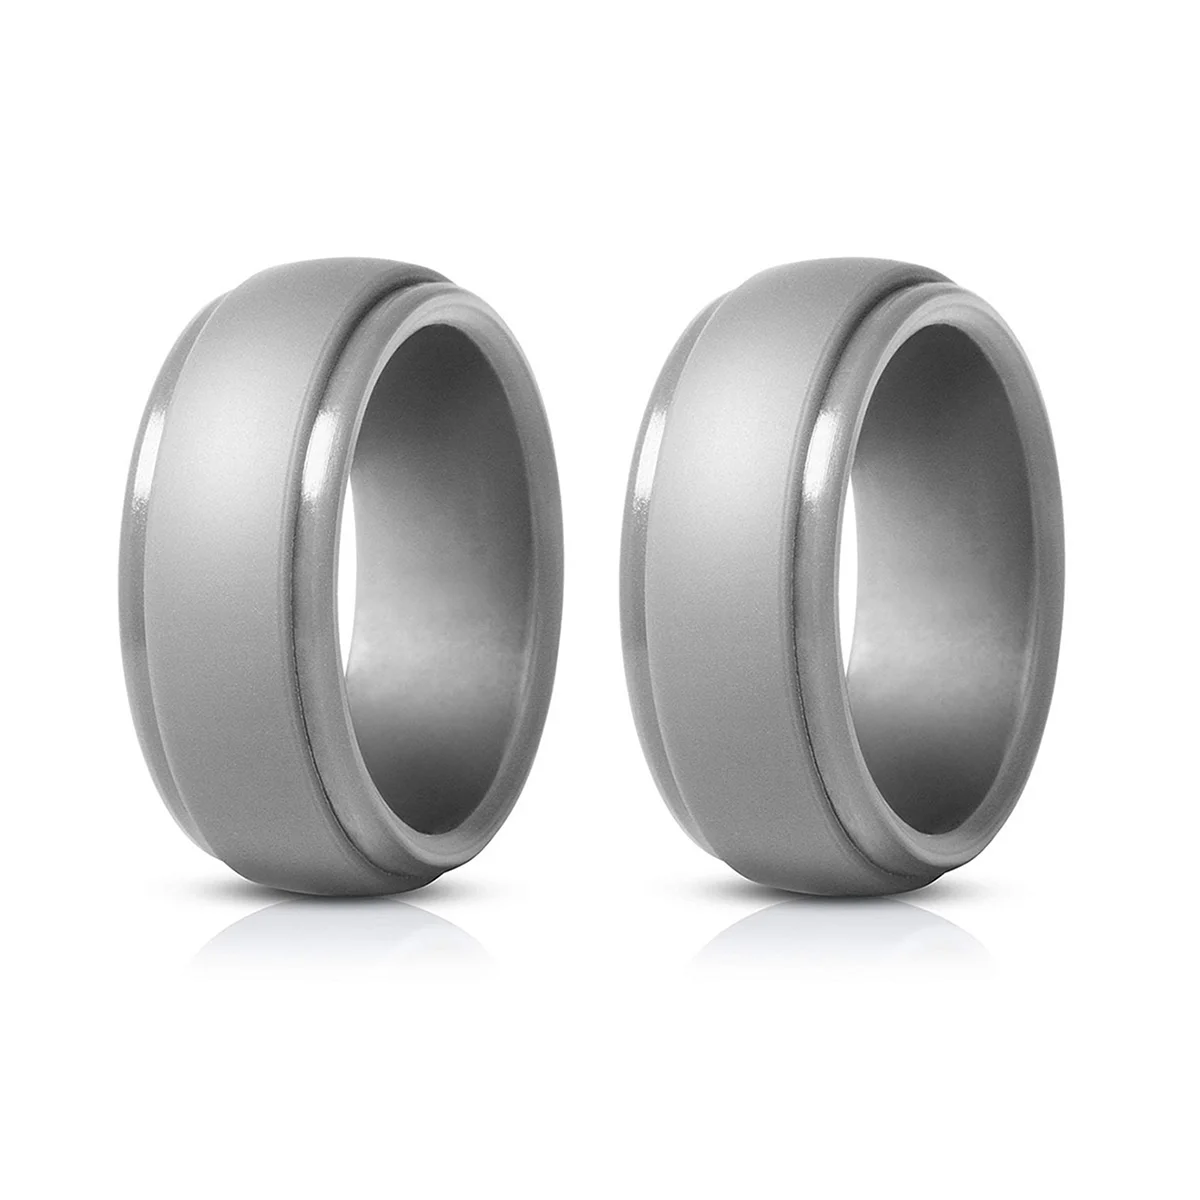 

8 мм популярное мужское Силиконовое рандомное женское Силиконовое обручальное кольцо экологическое уличное Спортивное кольцо серого цвета X2 7